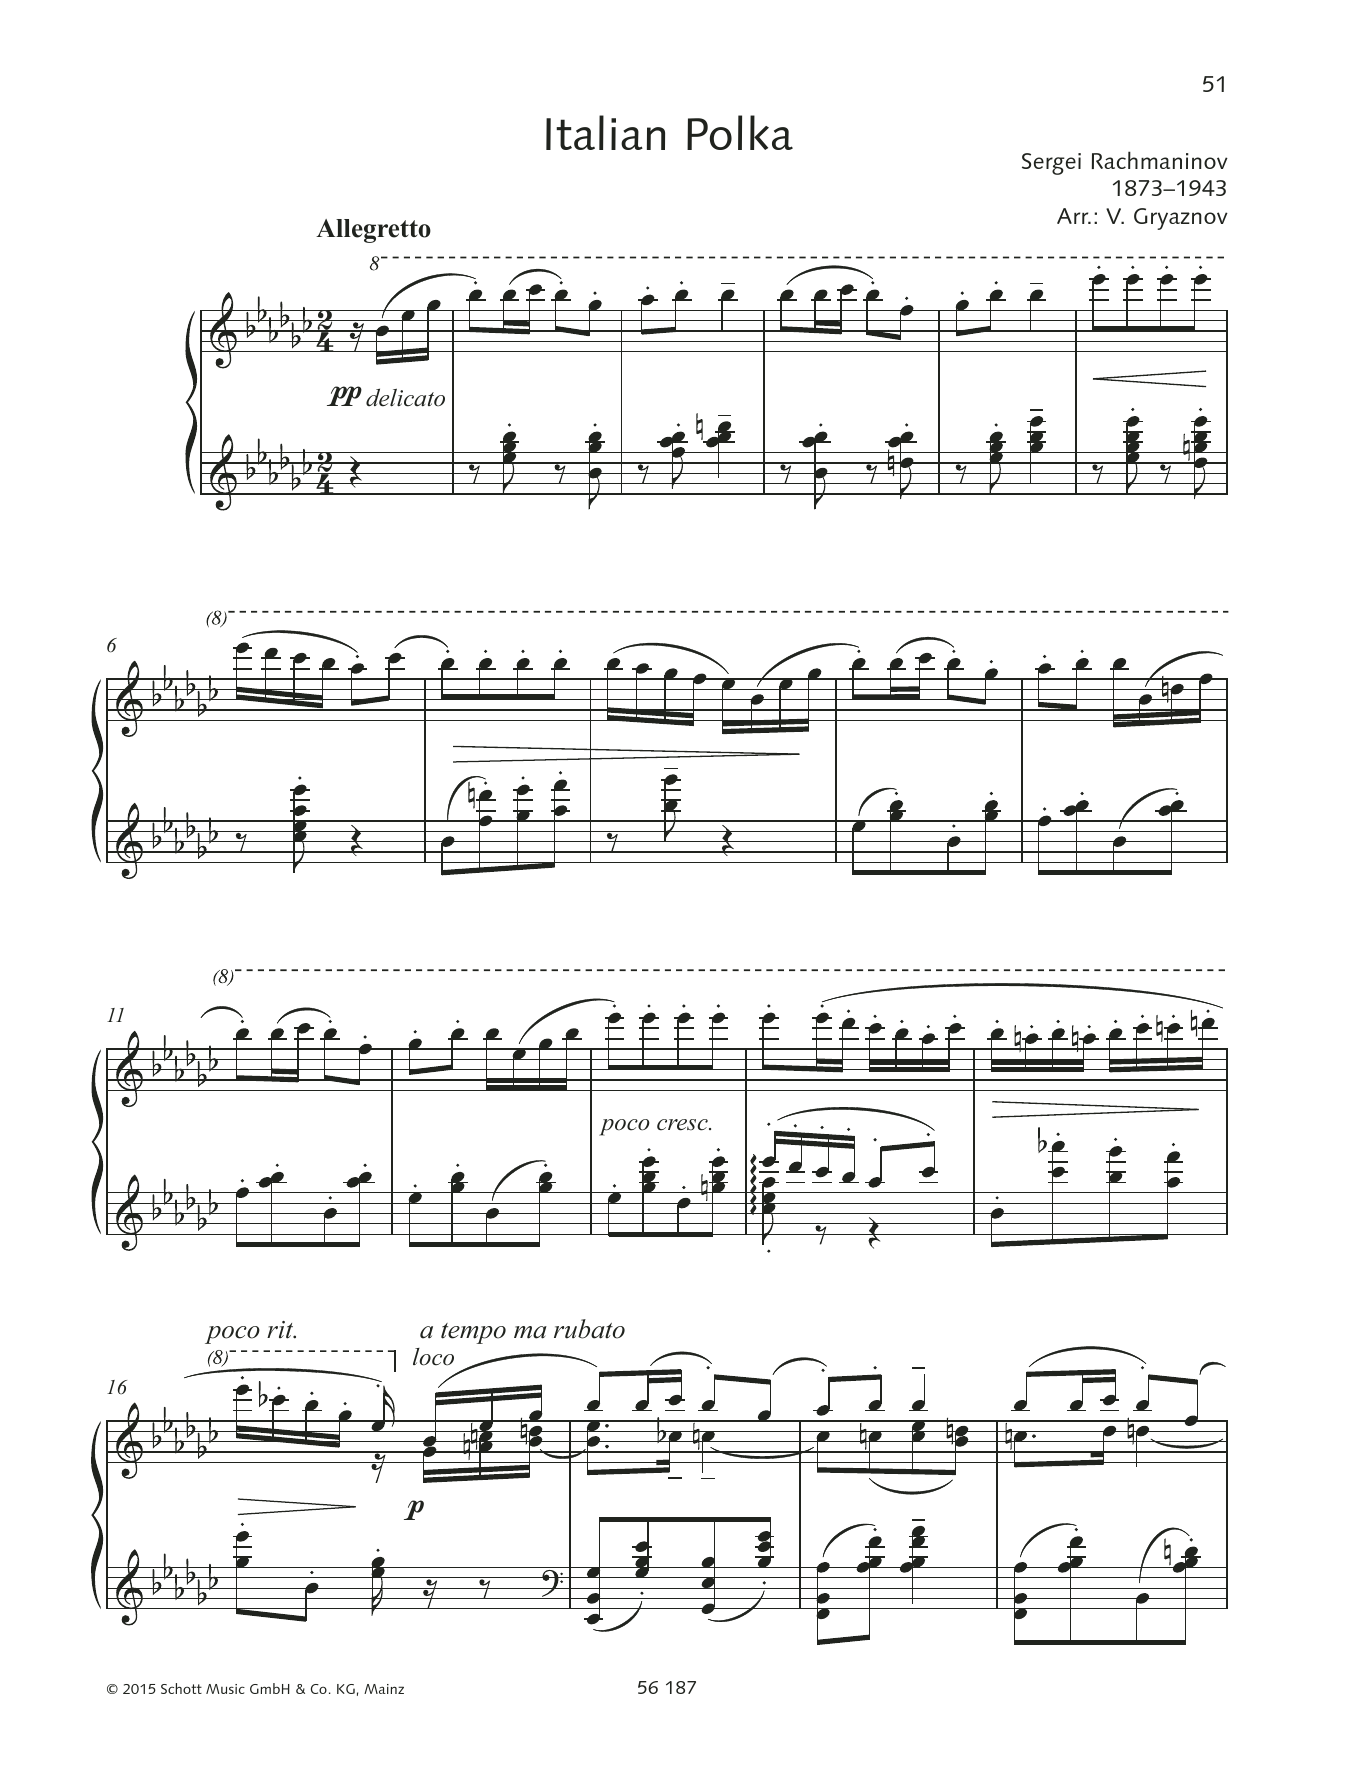 Download Sergei Rachmaninoff Italienische Polka Sheet Music